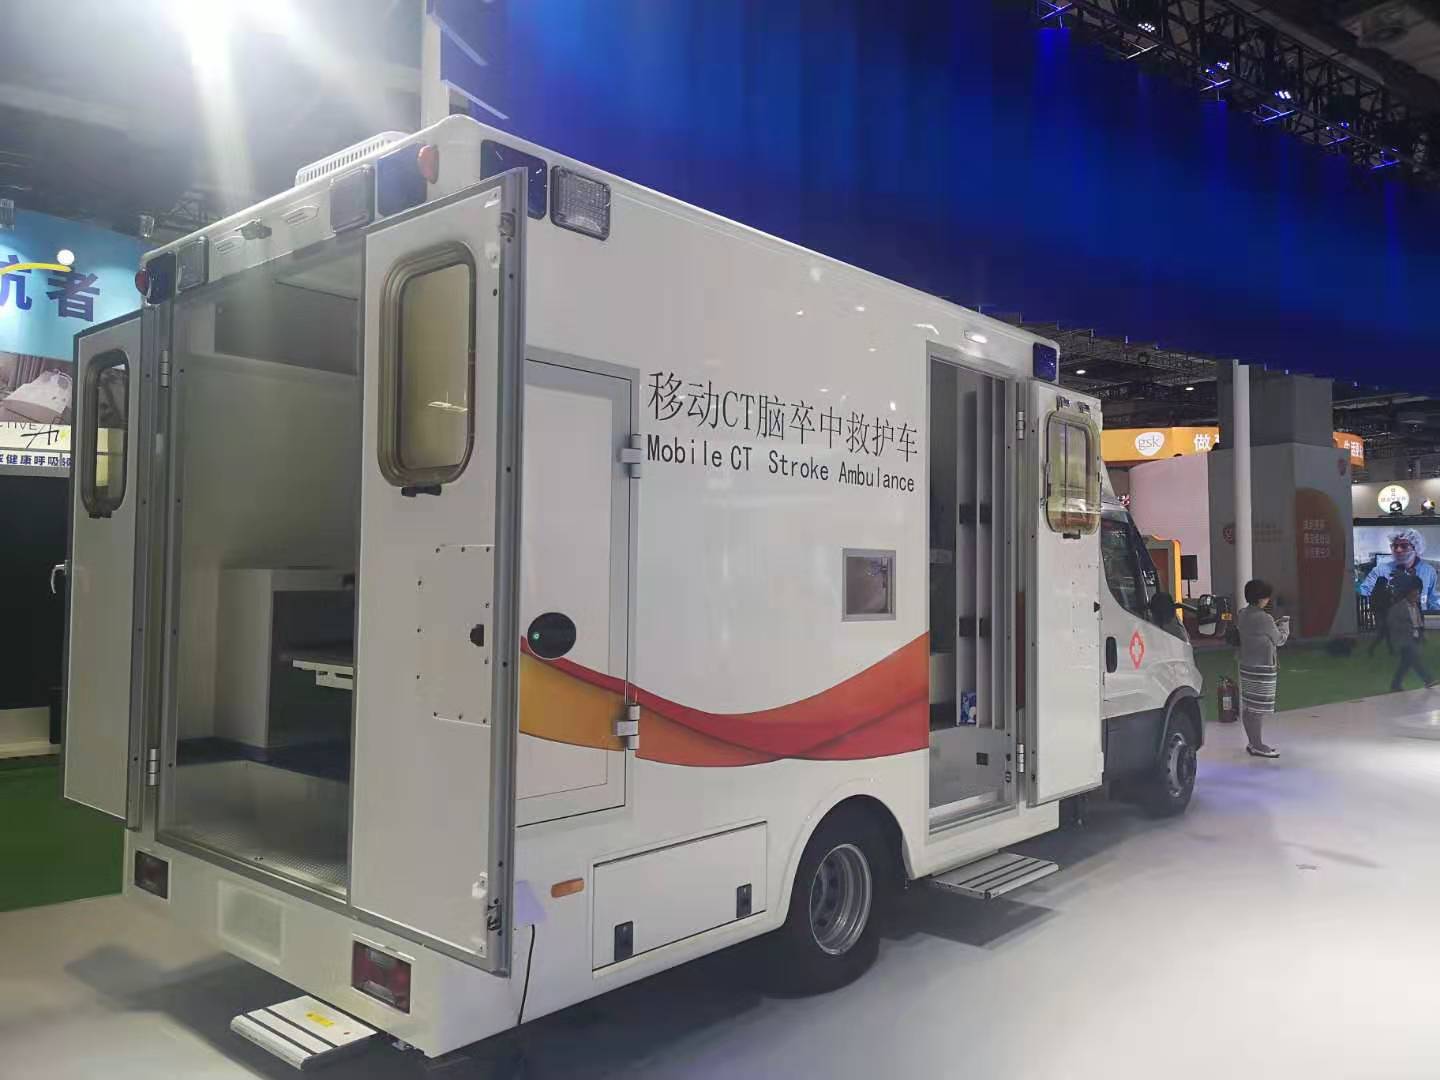 5G救护车来了！中国移动发布进博会5G移动医疗急救保障平台_专题 _ 文汇网